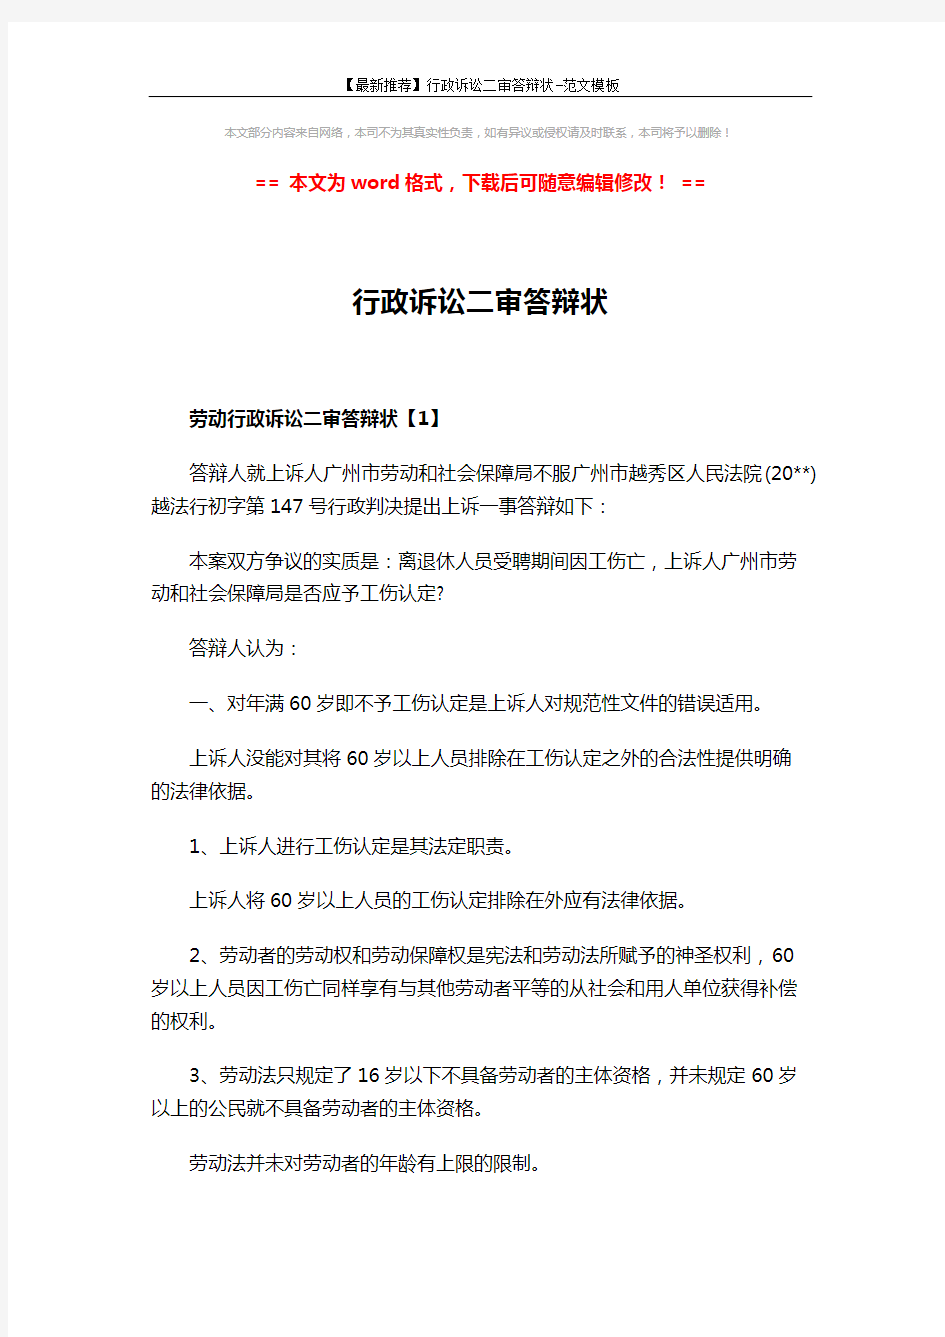 【最新推荐】行政诉讼二审答辩状-范文模板 (7页)